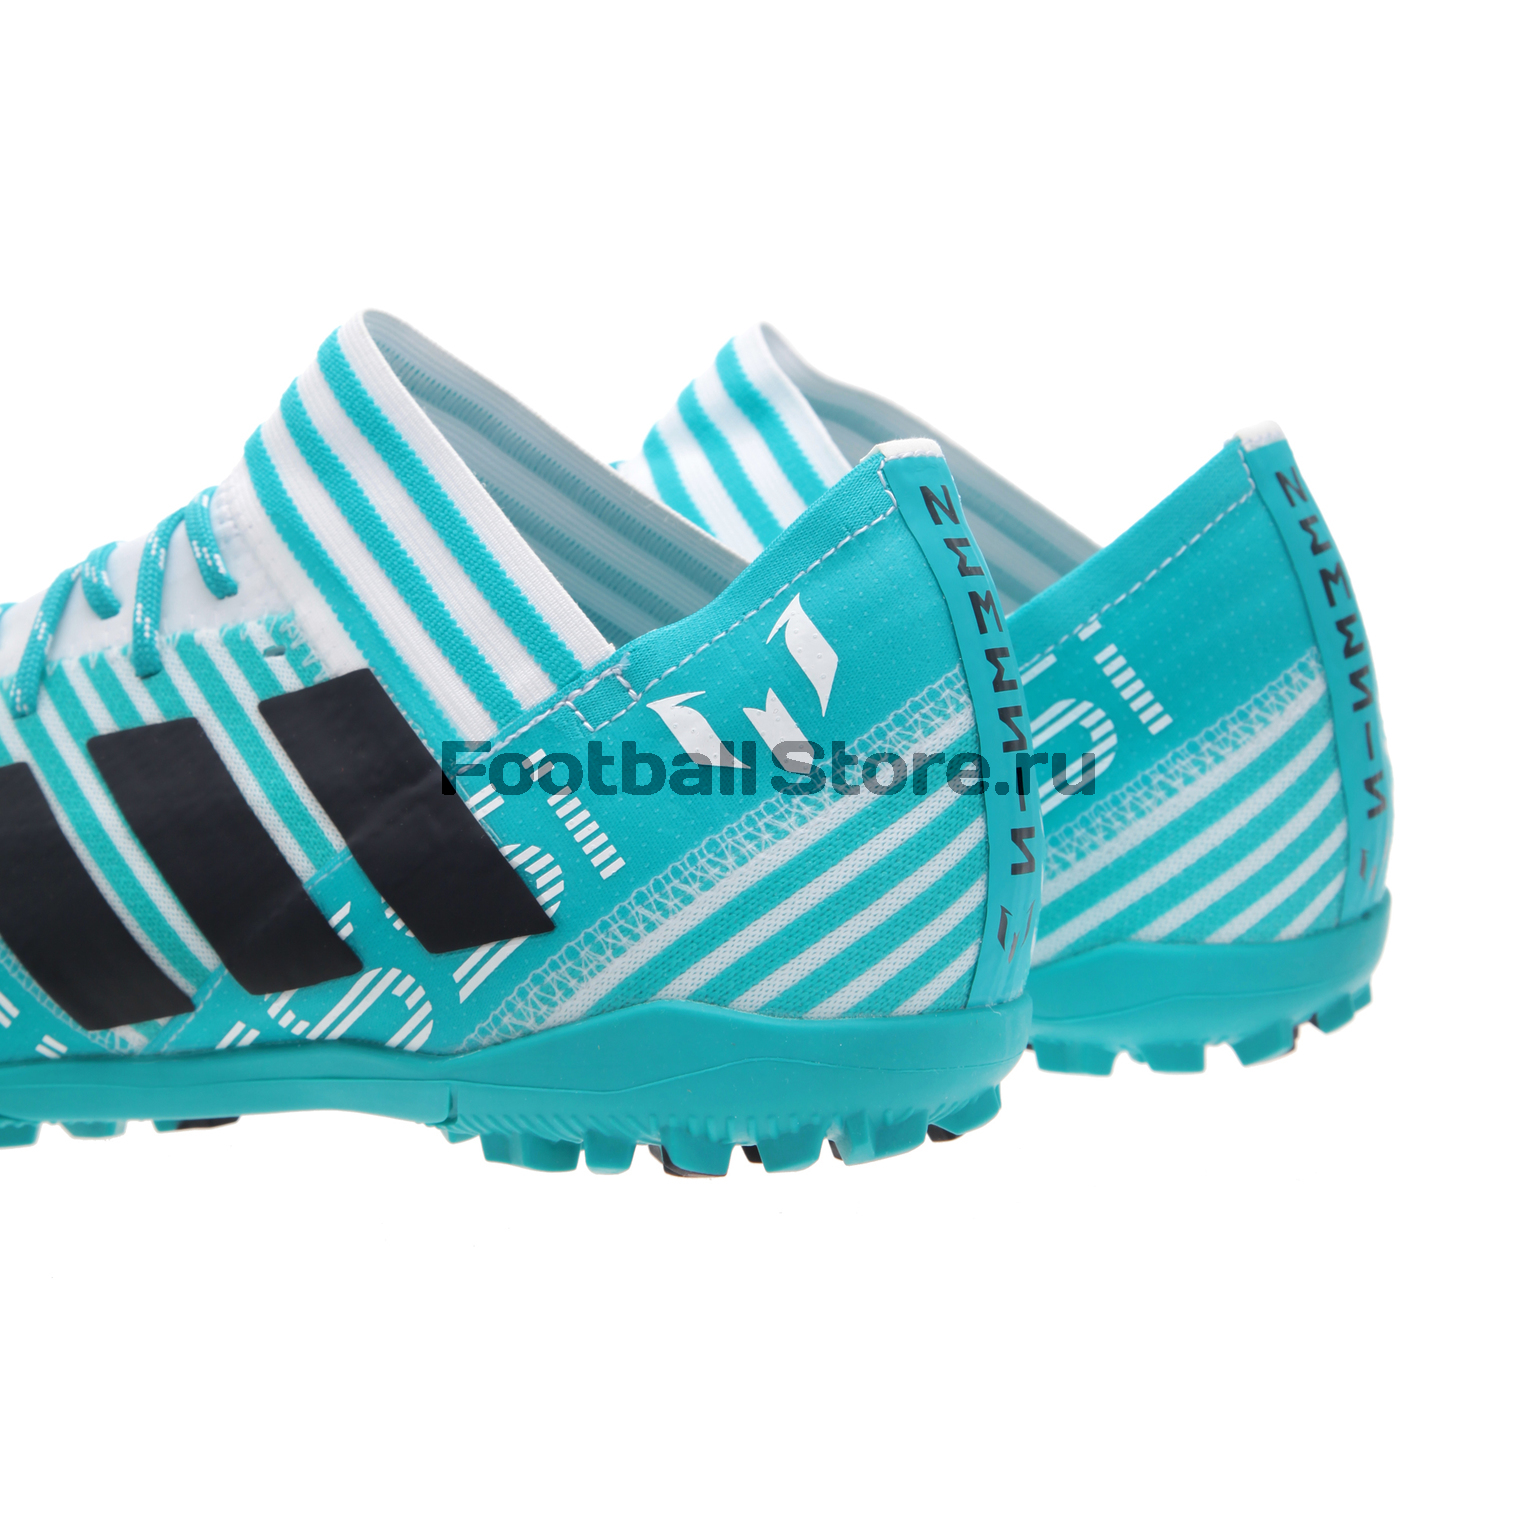 Шиповки Adidas Nemeziz Messi Tango 17.3 TF S77192